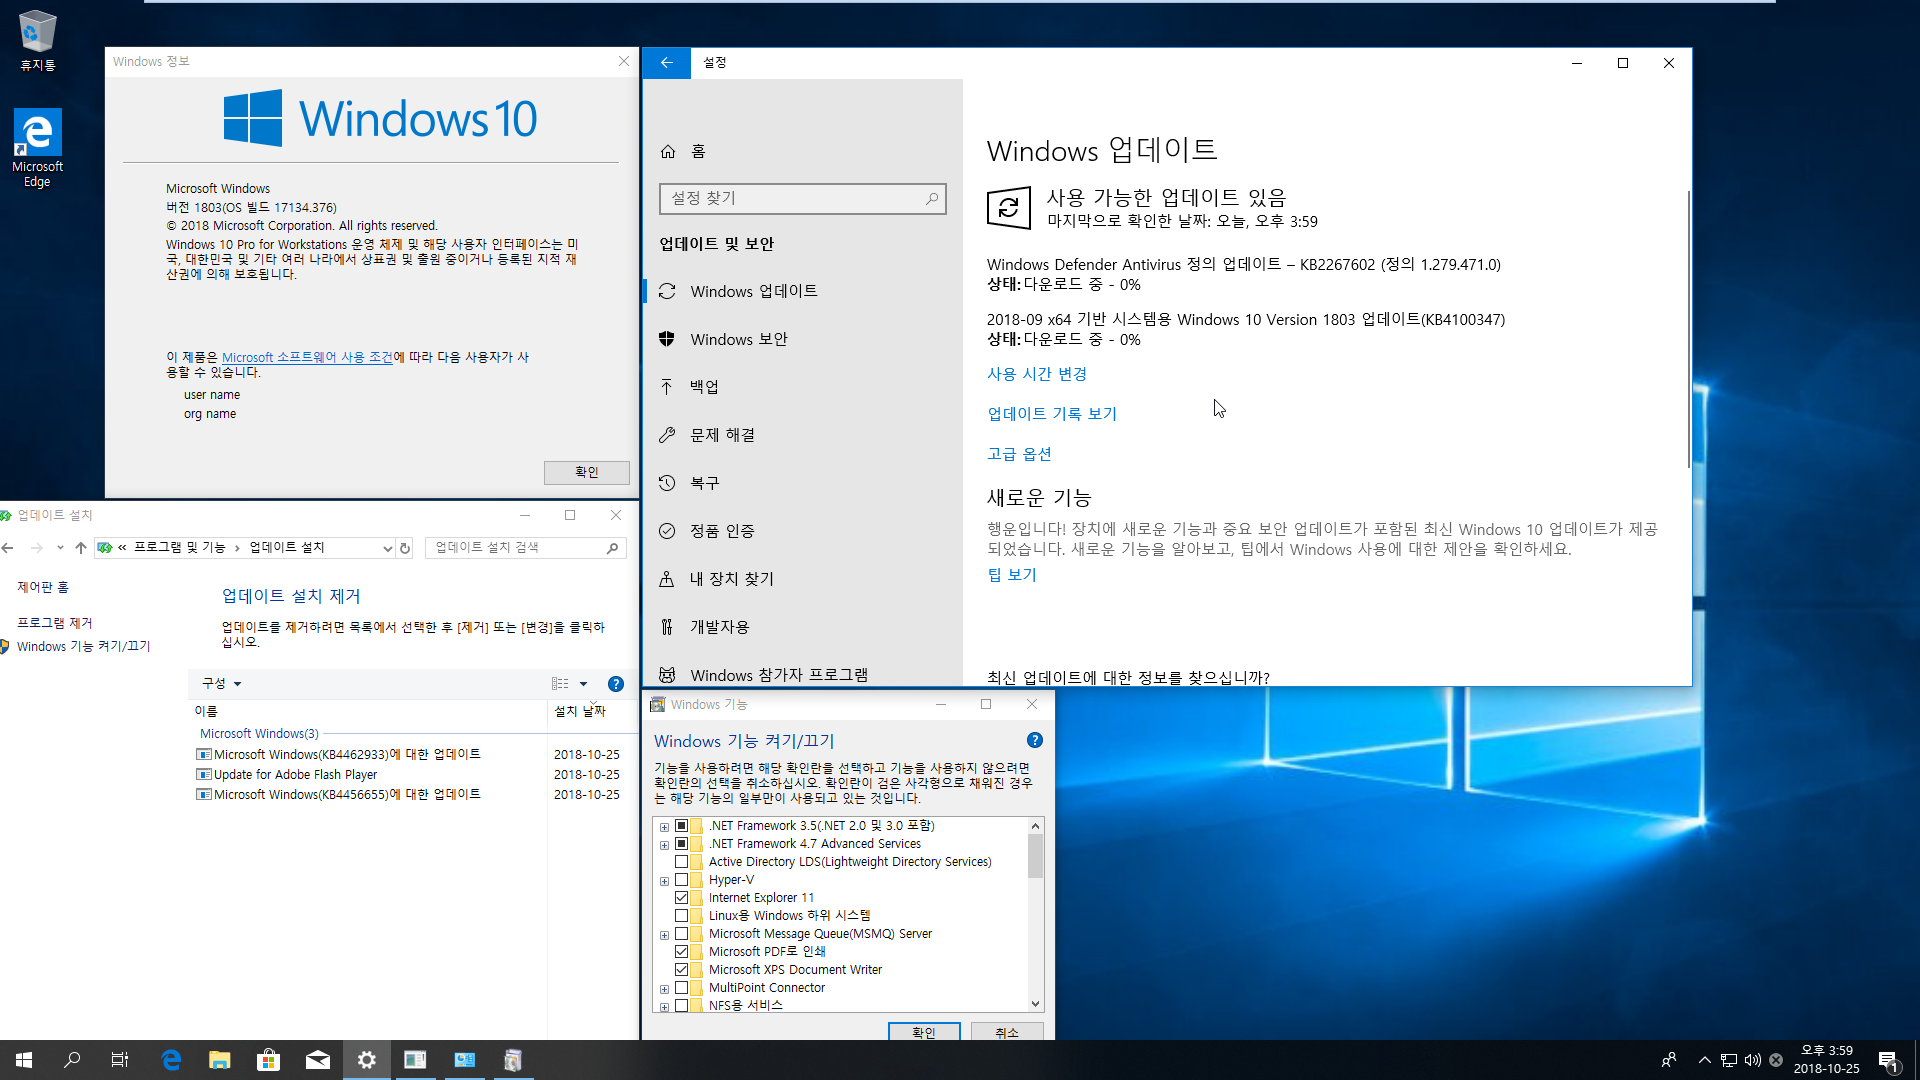 Windows 10 수시 업데이트 2018-10-25 [한국시간] 나왔네요 - Windows 10 버전1803용 누적 업데이트 KB4462933 (OS 빌드 17134.376) 통합중 입니다 2018-10-25_155915.png